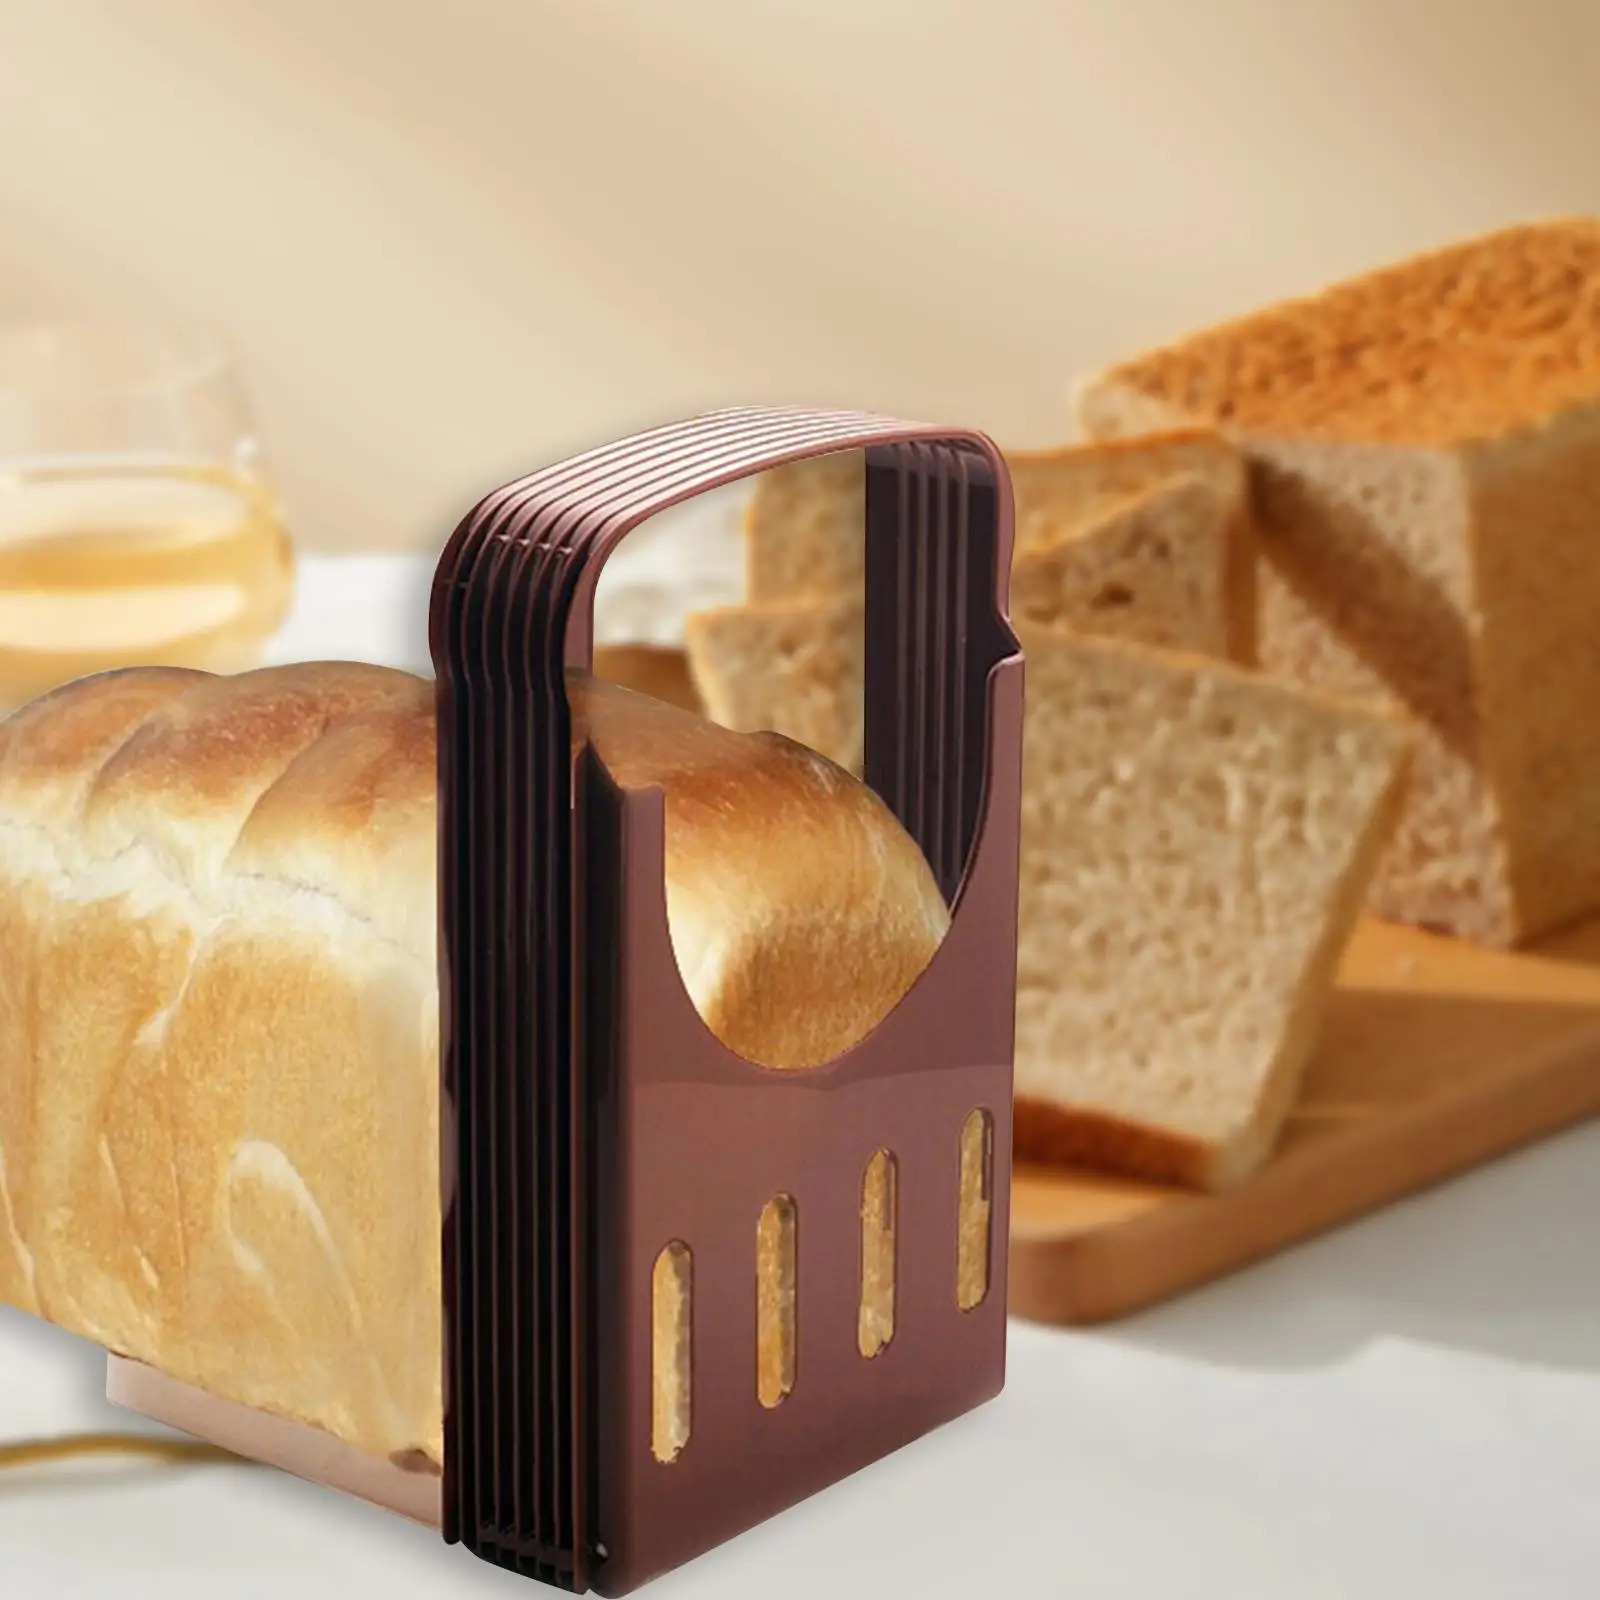 Bread Slicer Machine Bread Loaf Slicer Cutting Guide Manual Toast Slicer Adjustable Toast Cutter for Slicing Kitchen Baking